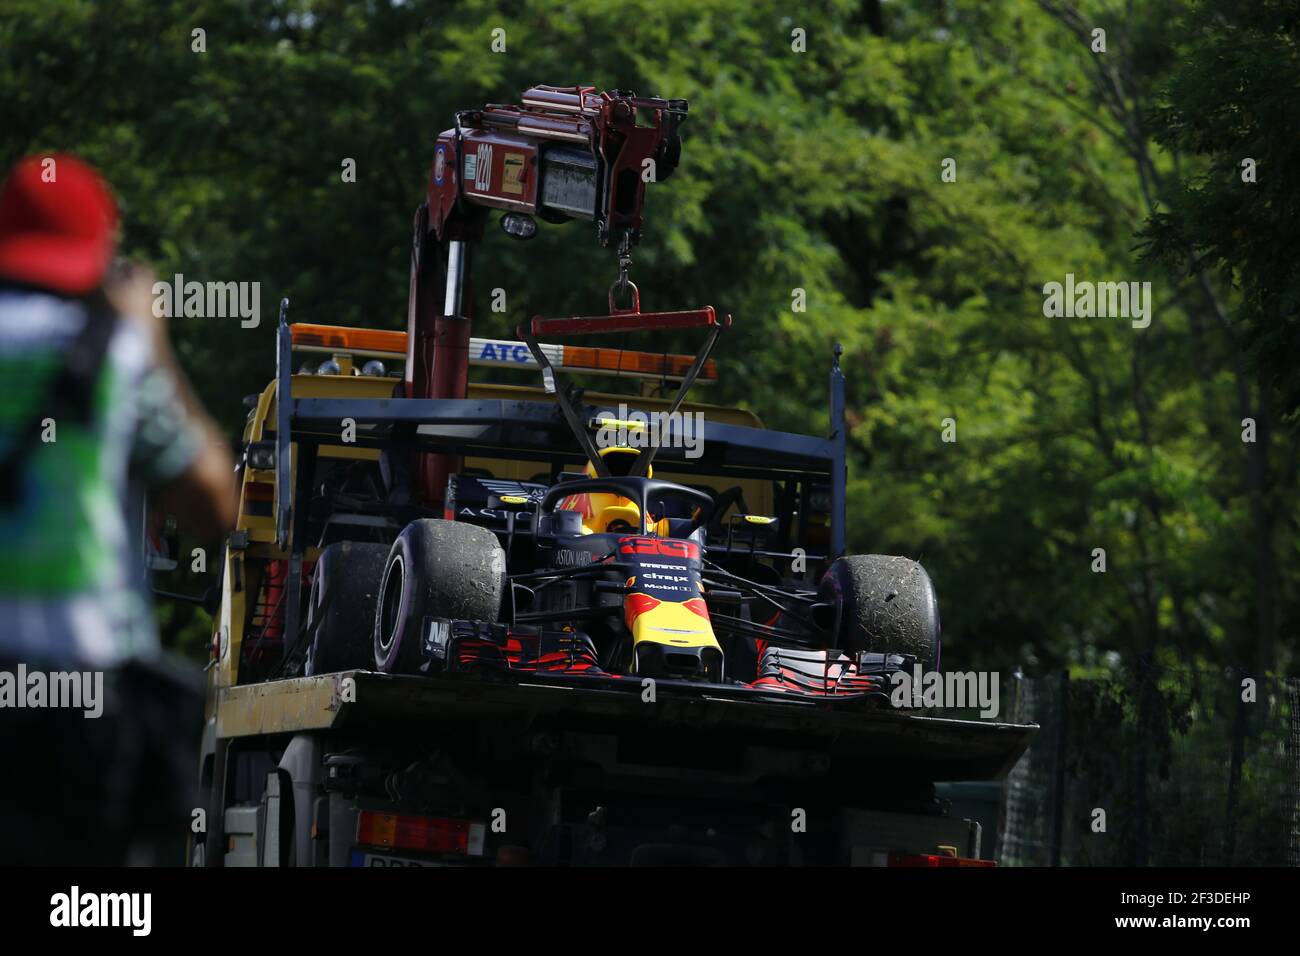 33 VERSTAPPEN Max (nld), Aston Martin Red Bull Racing Tag Heuer RB14, durante il Campionato del mondo di Formula uno 2018, Gran Premio d'Ungheria dal 26 al 29 luglio, Hungaroring, Budapest - Foto DPPI Foto Stock